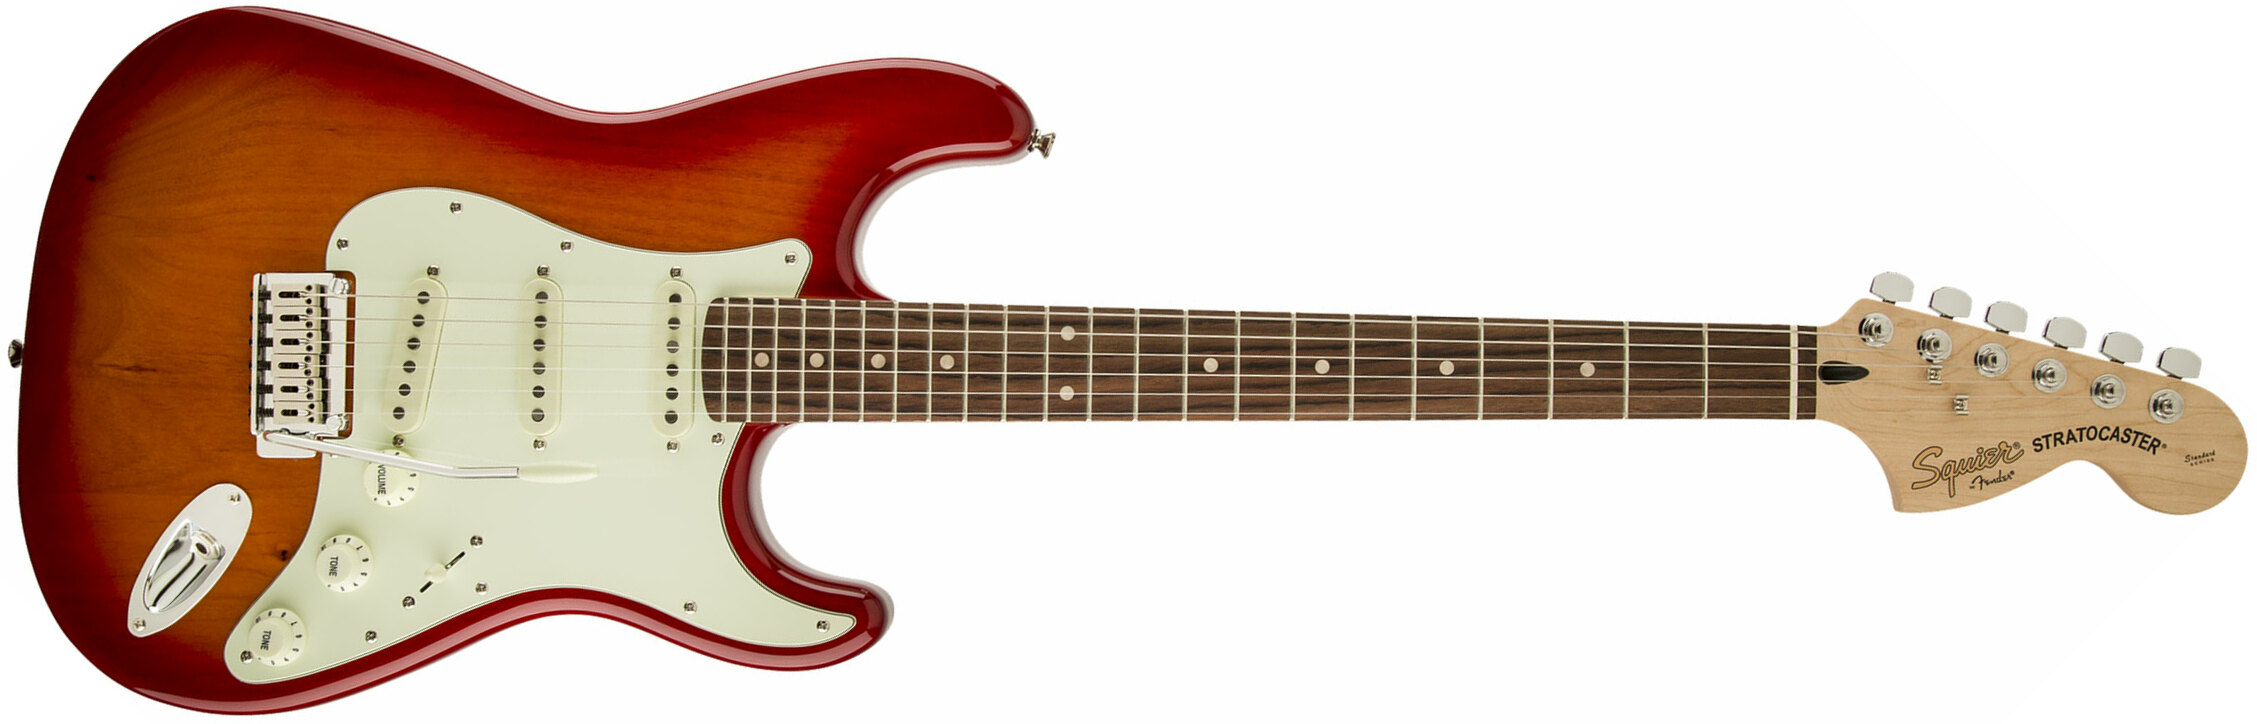 Squier Strat Standard Lau - Cherry Sunburst - Elektrische gitaar in Str-vorm - Main picture